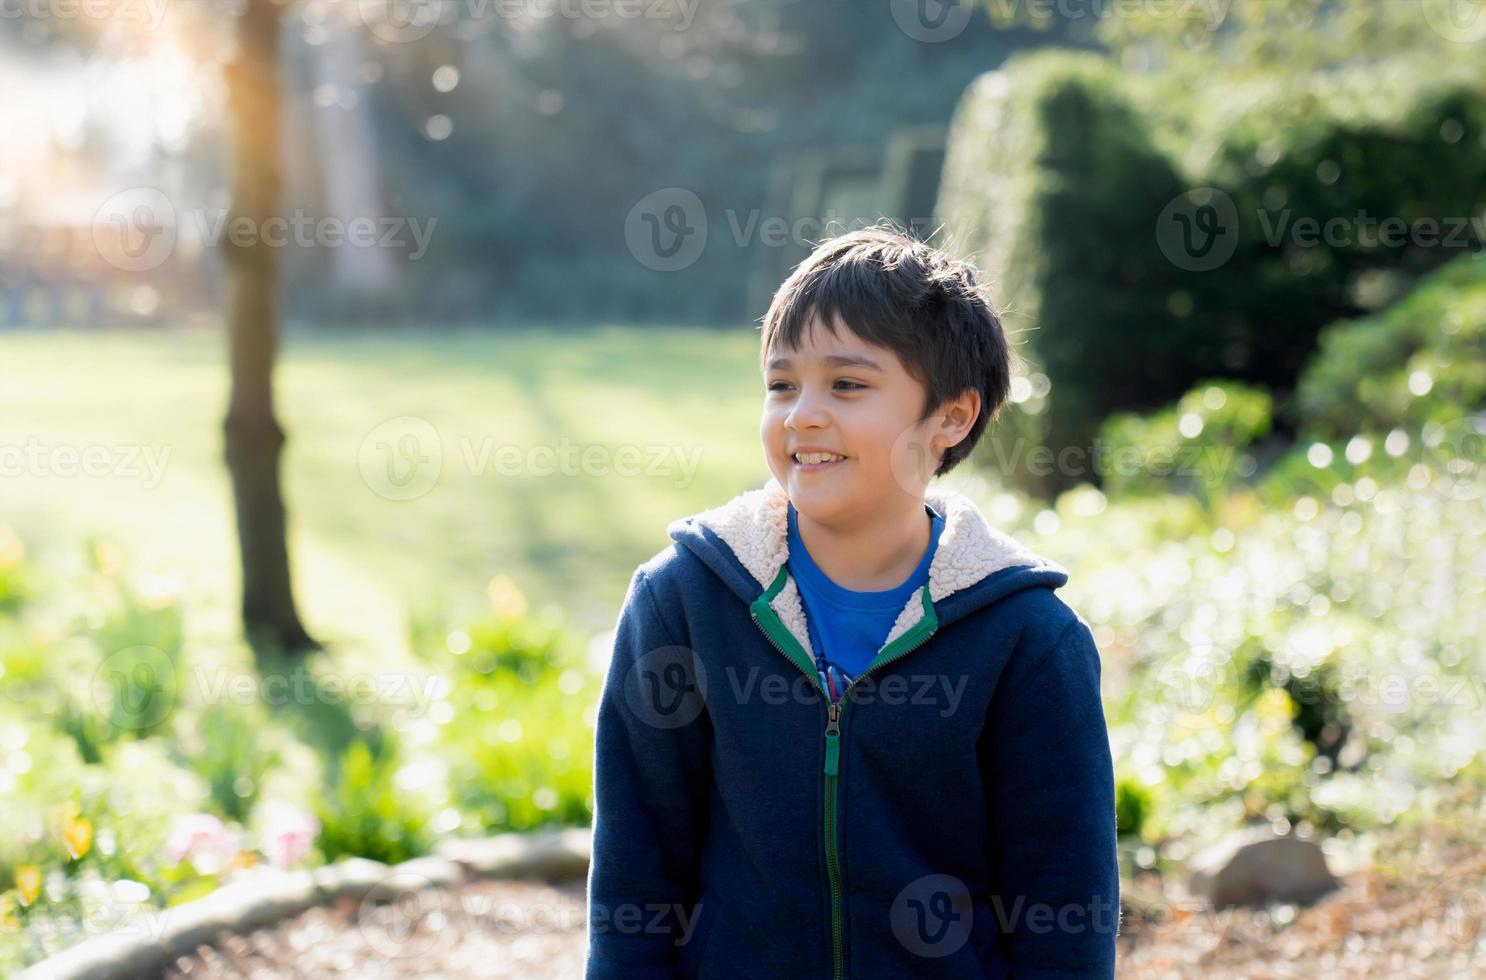 un niño feliz jugando al aire libre en el jardín, un niño retratado con cara sonriente disfruta jugando afuera por la mañana, un niño relajándose en un día soleado de primavera o verano en el parque. foto